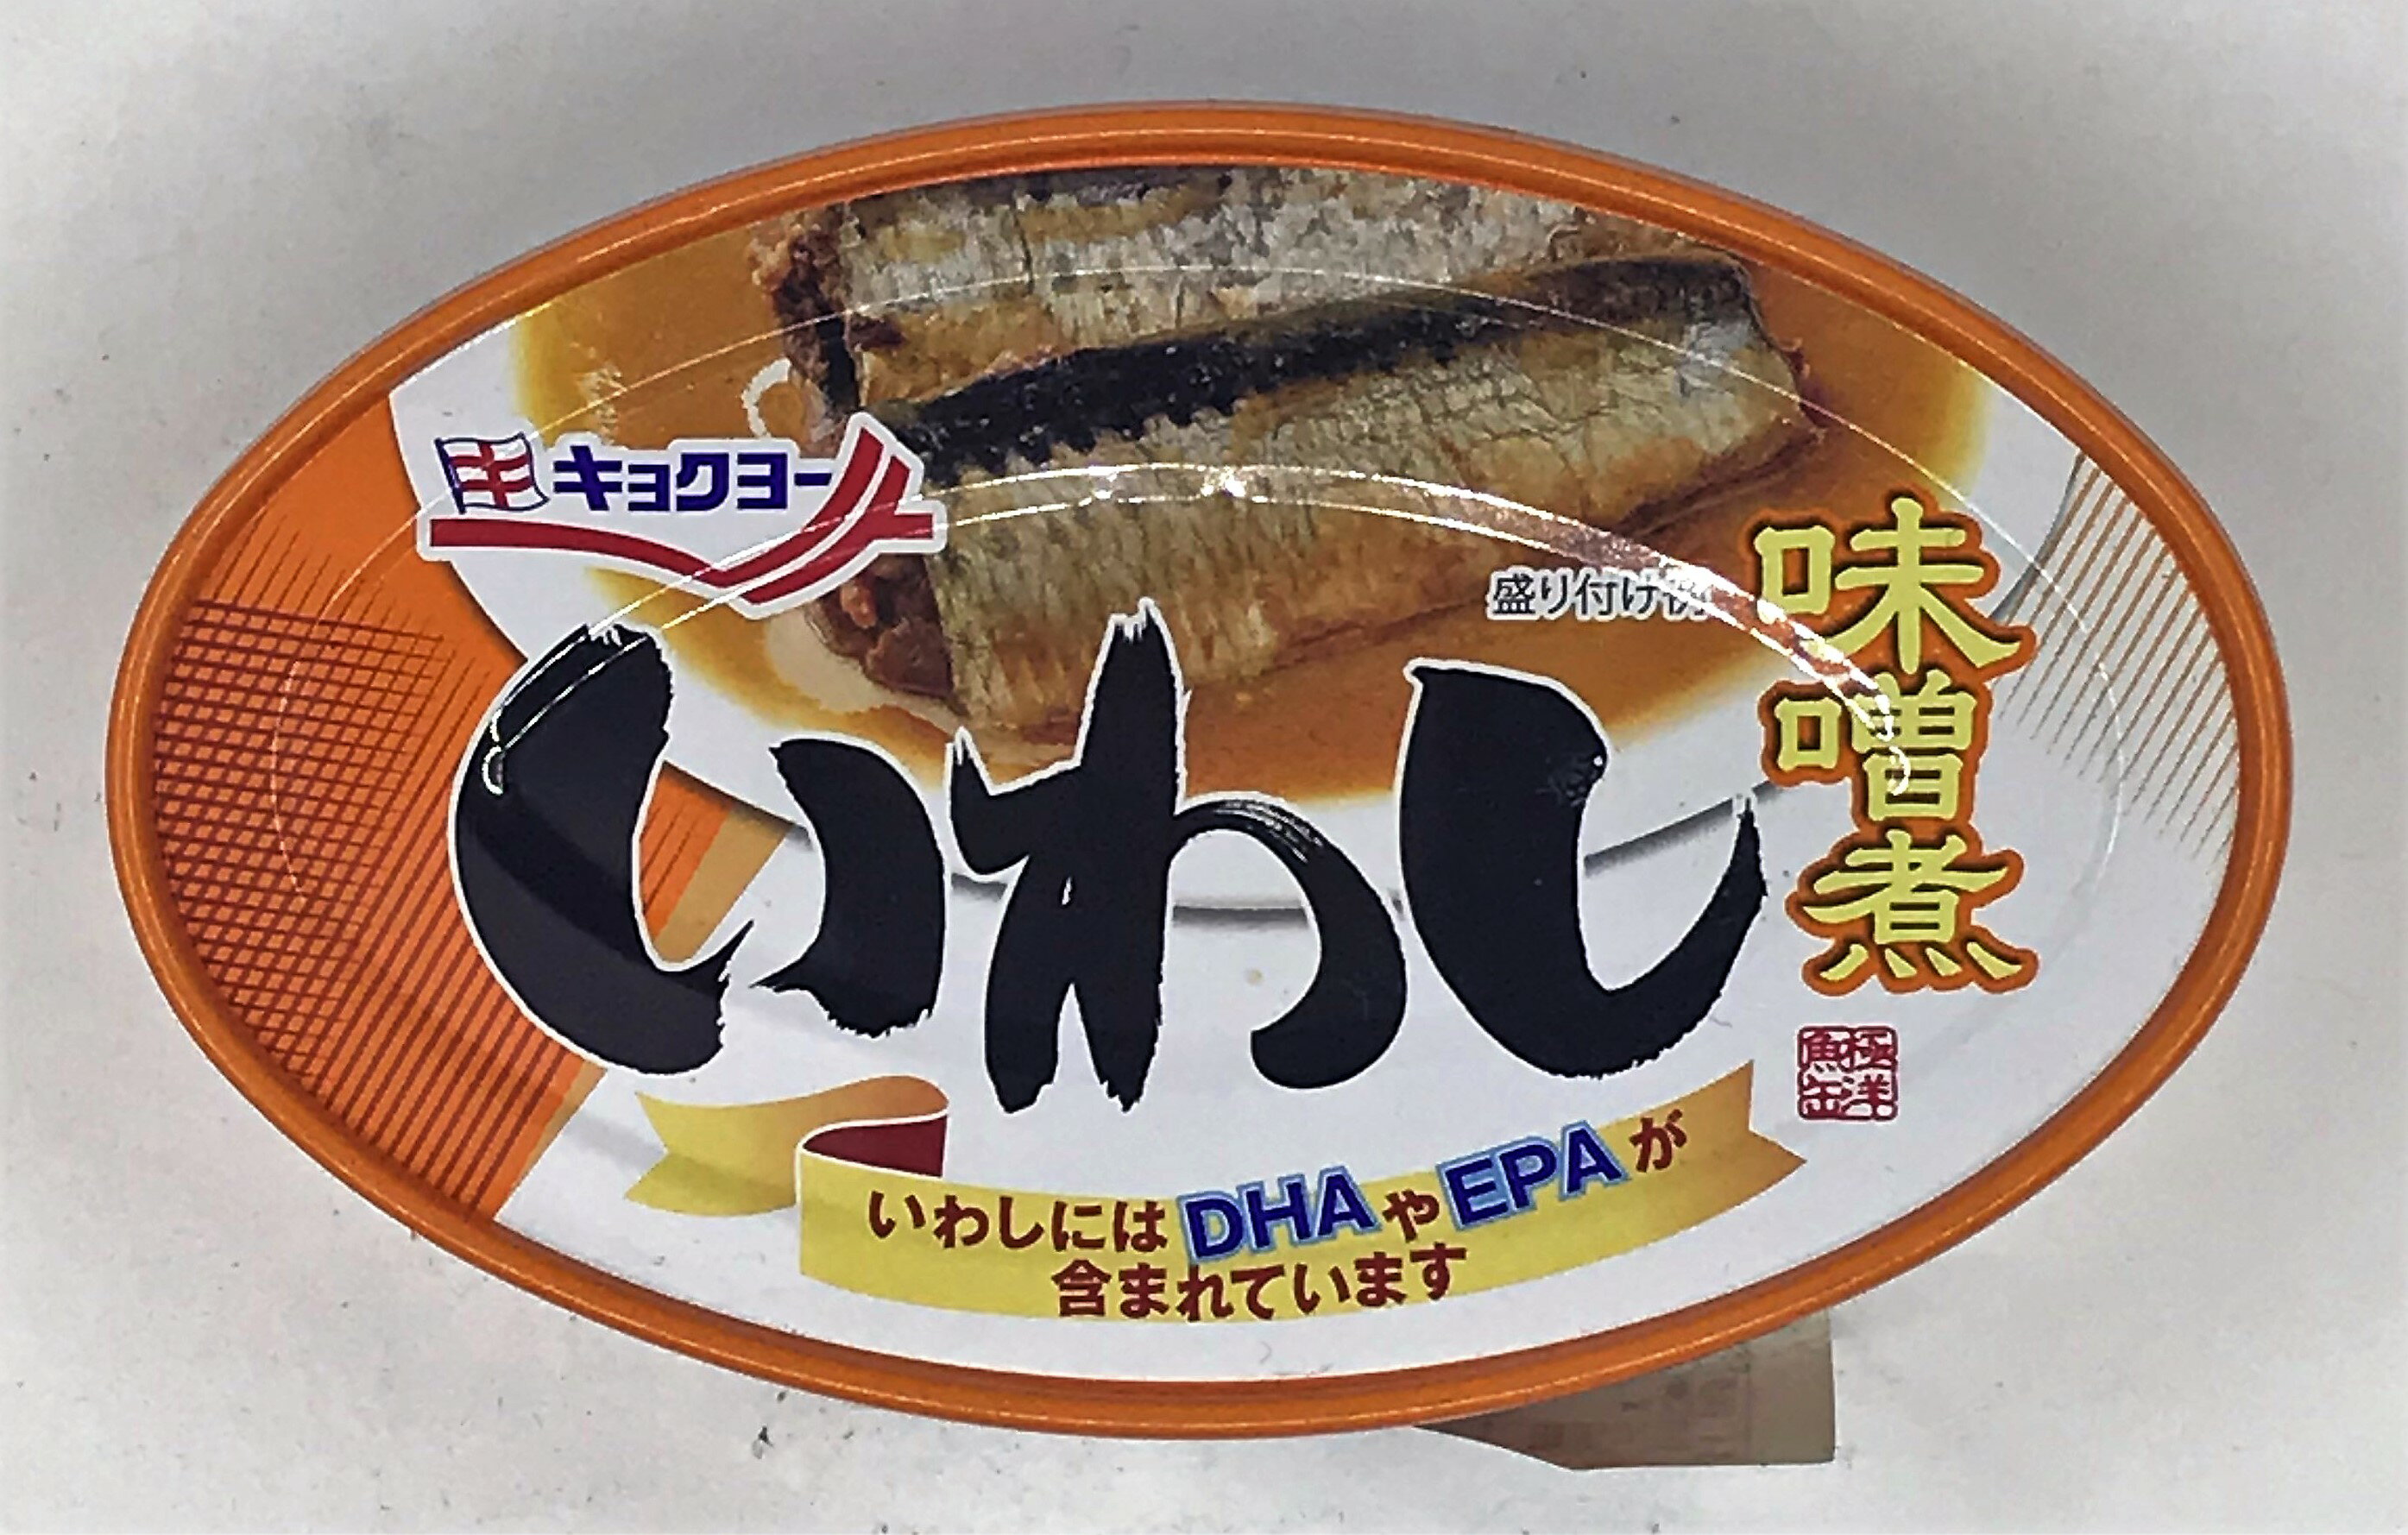 [哈日小丸子]極洋味付沙丁魚罐-味增(100g)